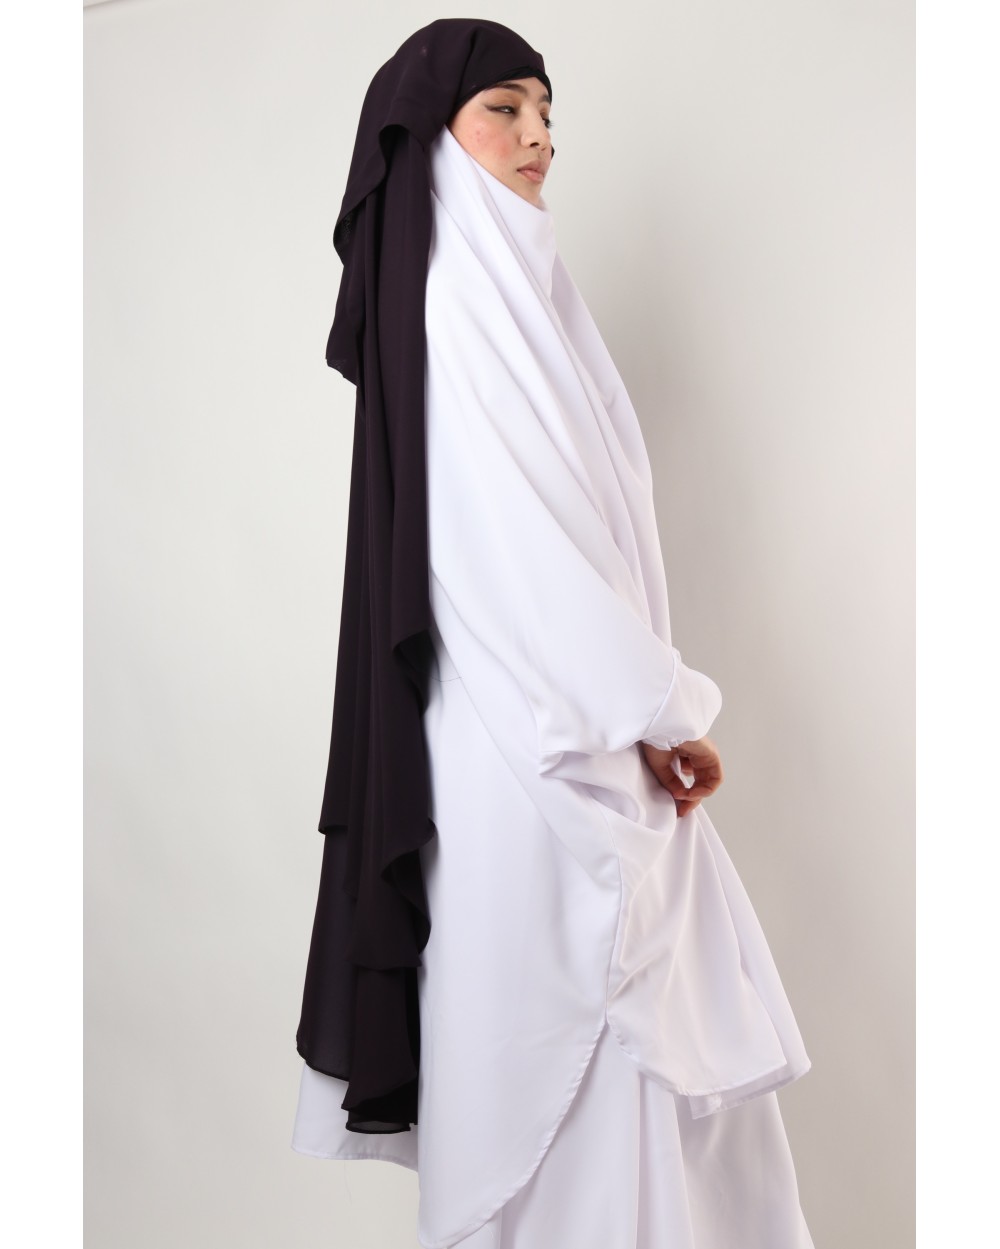 Sitar Shamael niqab with tie